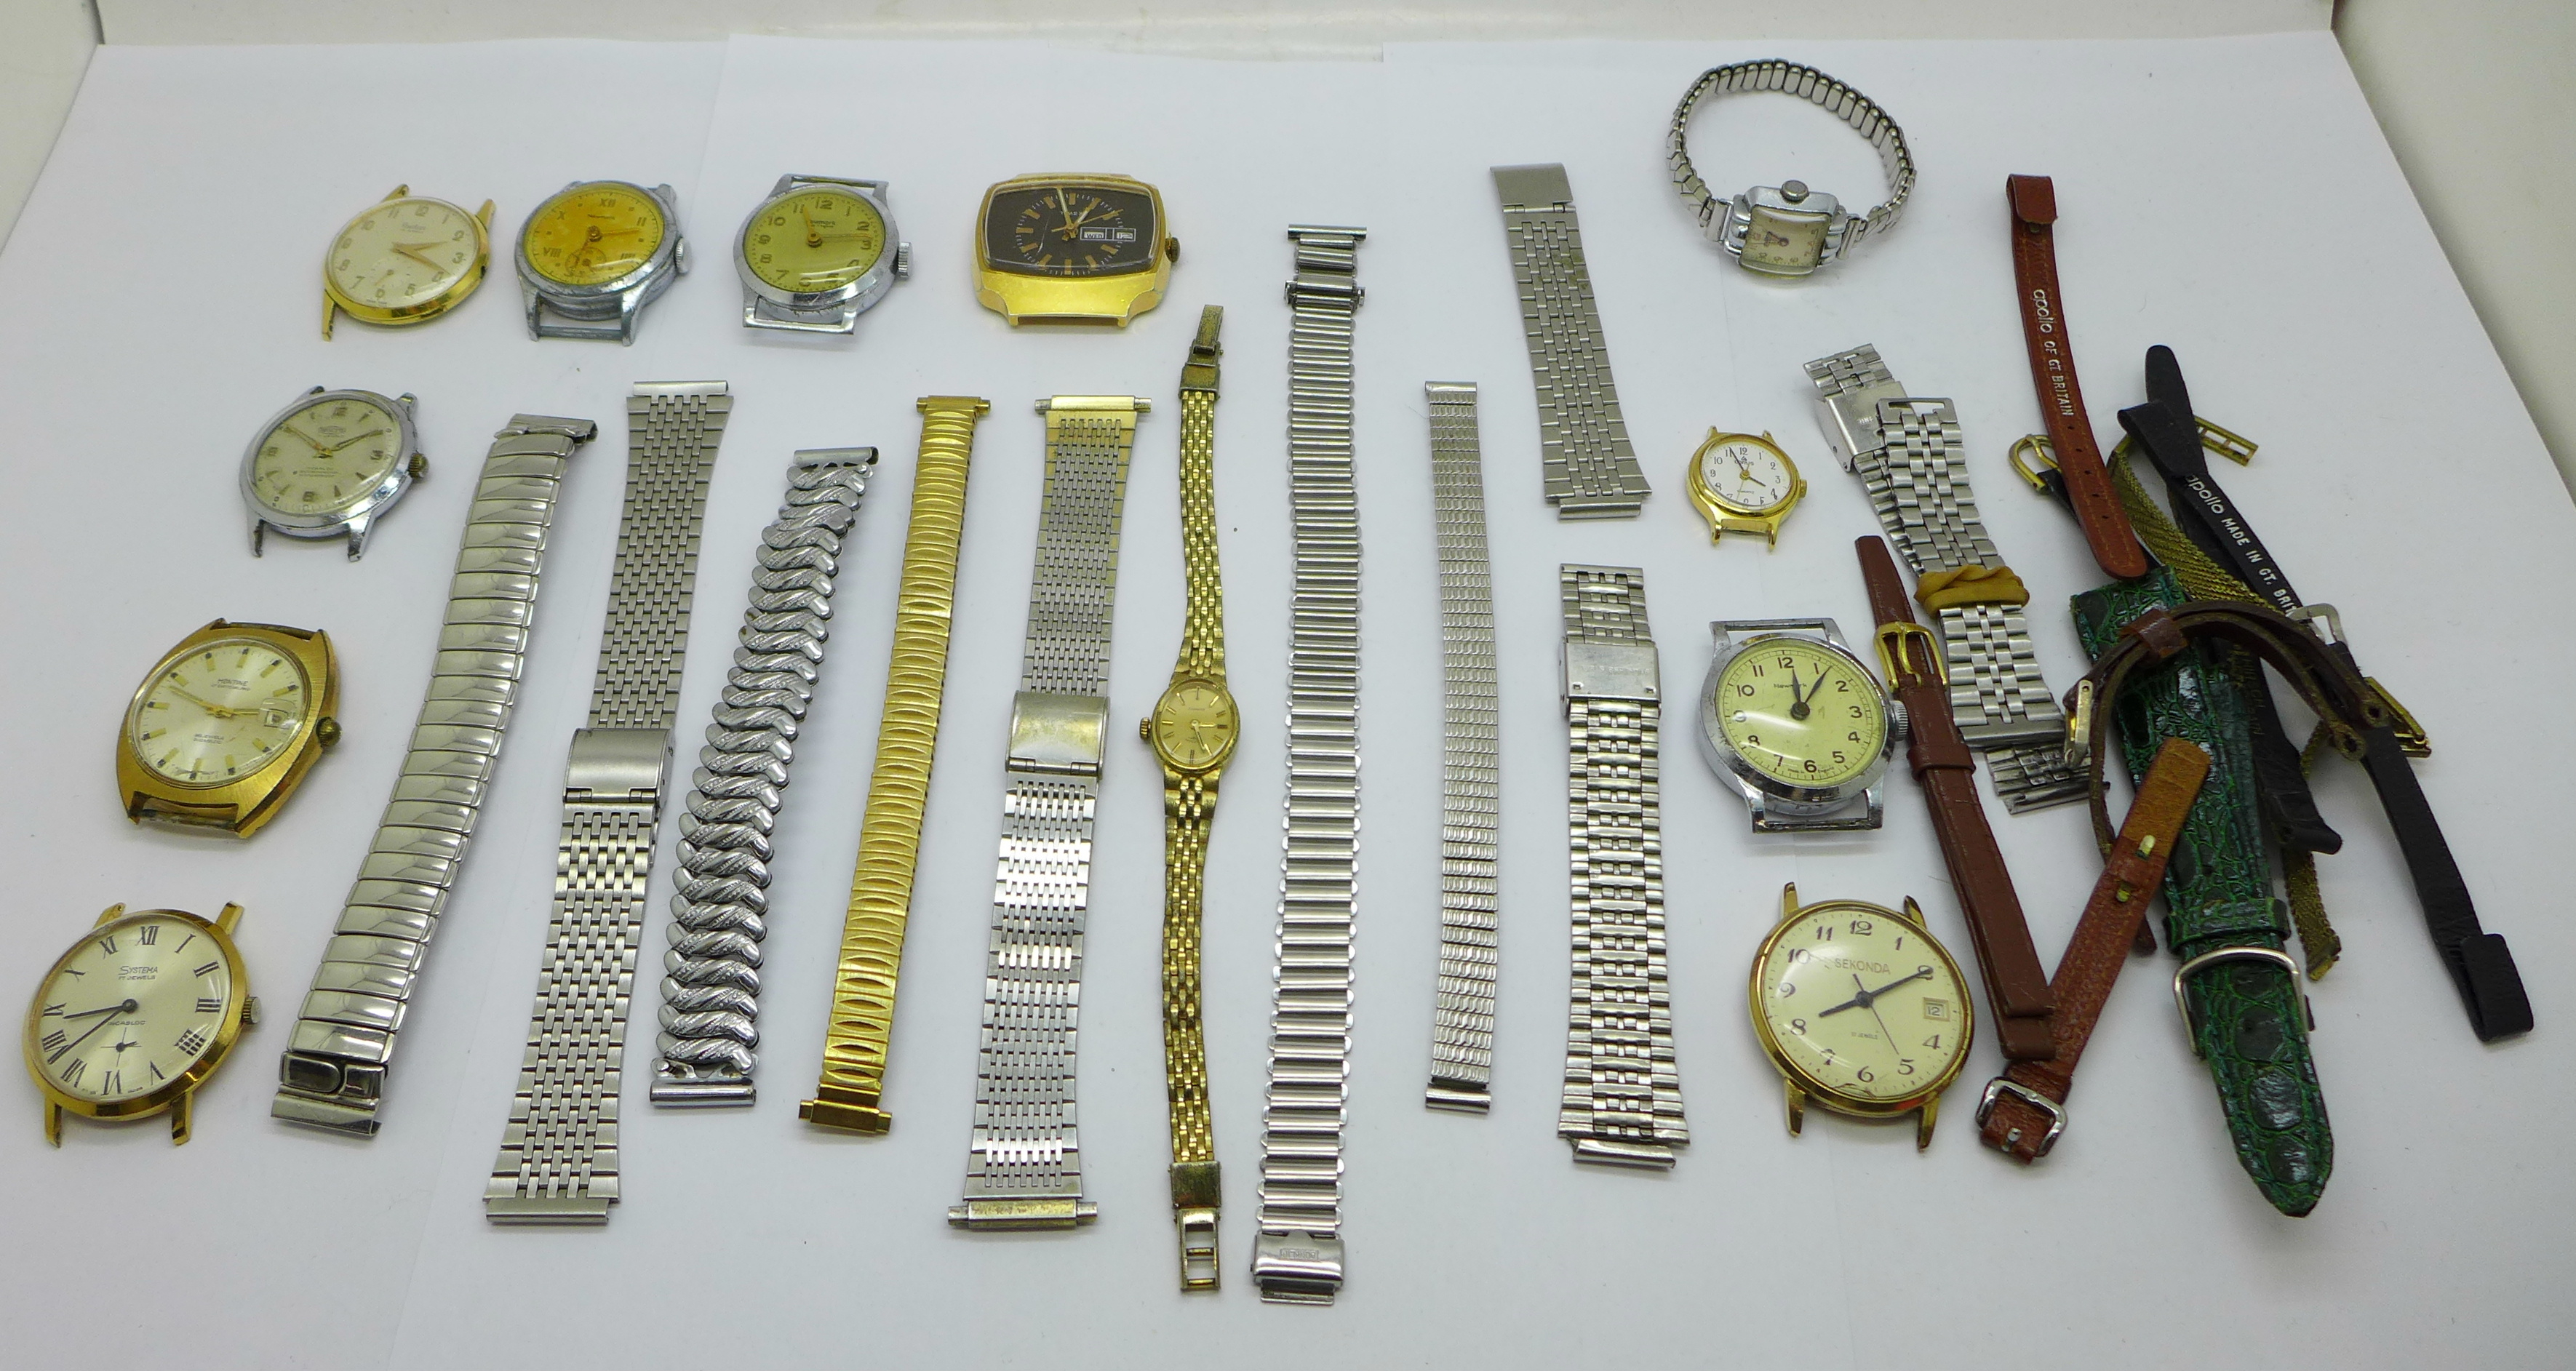 Wristwatch heads and bracelet straps